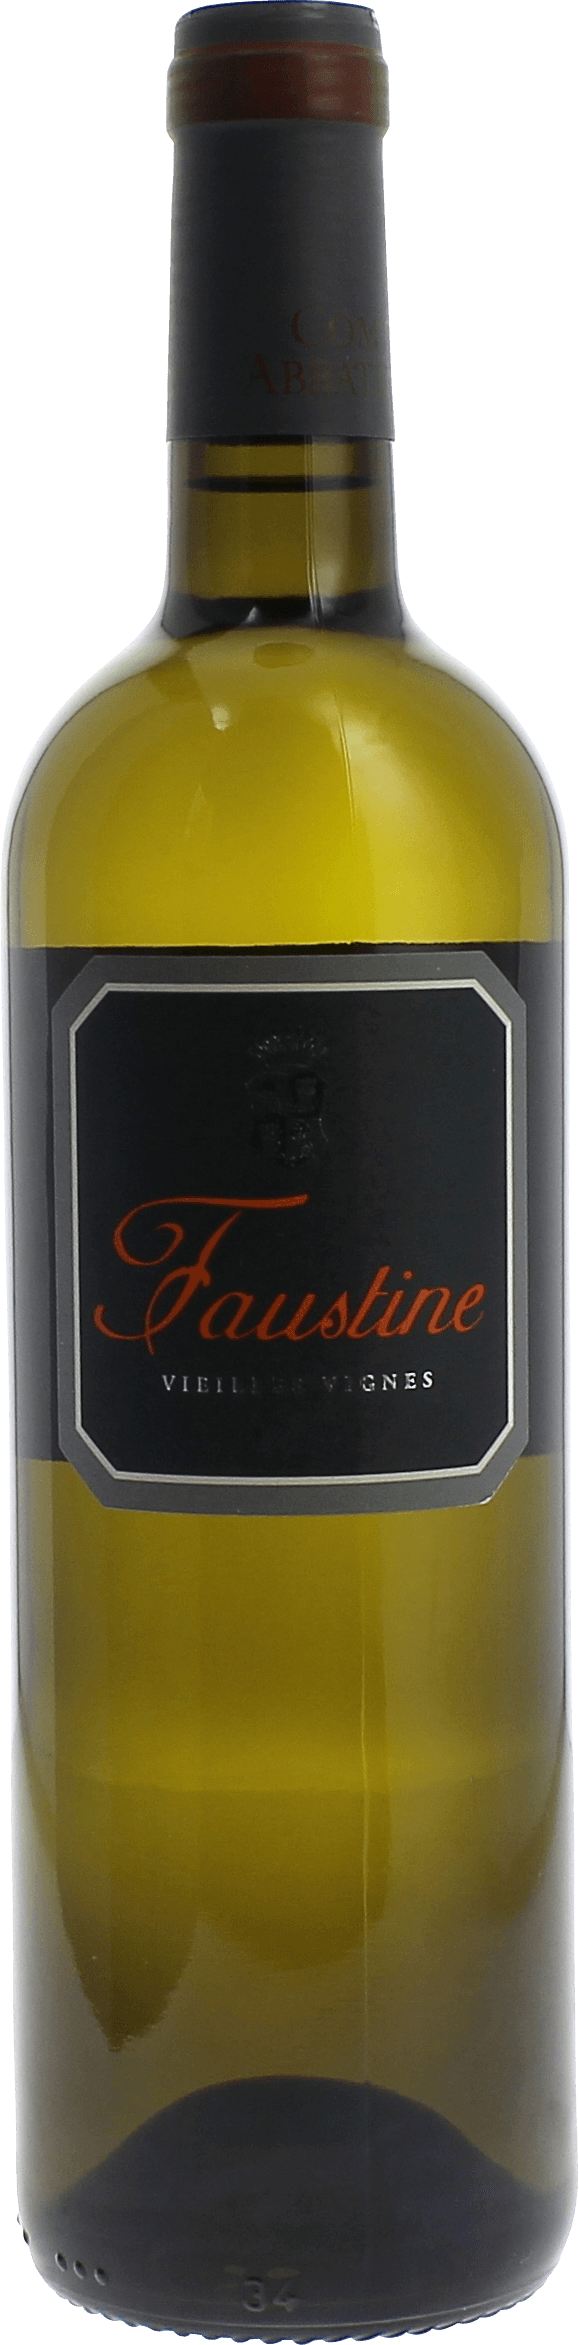 Domaine comte abatucci cuve faustine blanc 2017  AOC vin de Corse, Slection corse